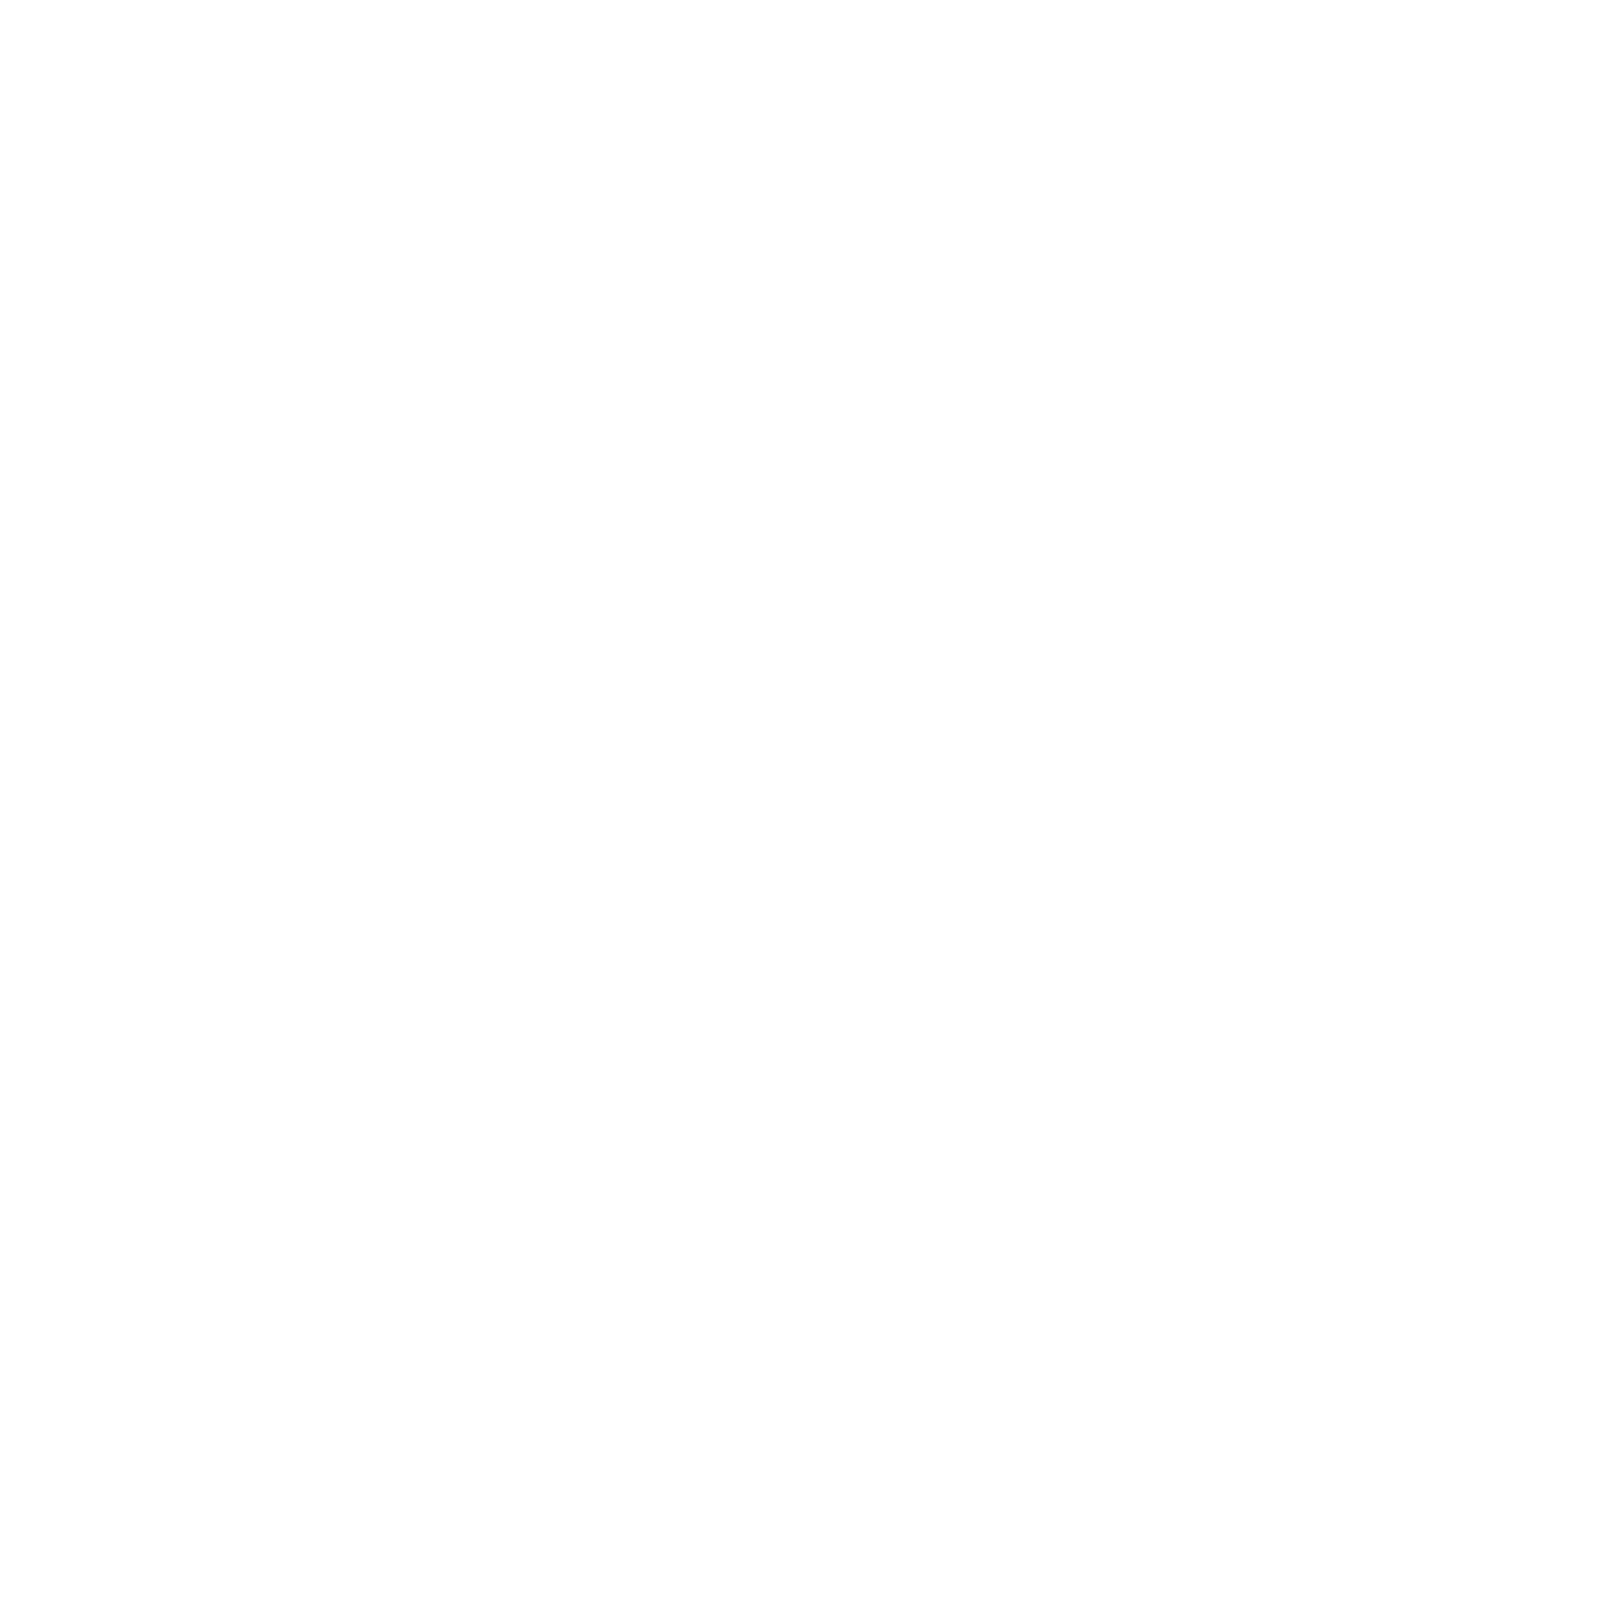 grafika – symbol pralki oznaczający możliwość prania w pralce